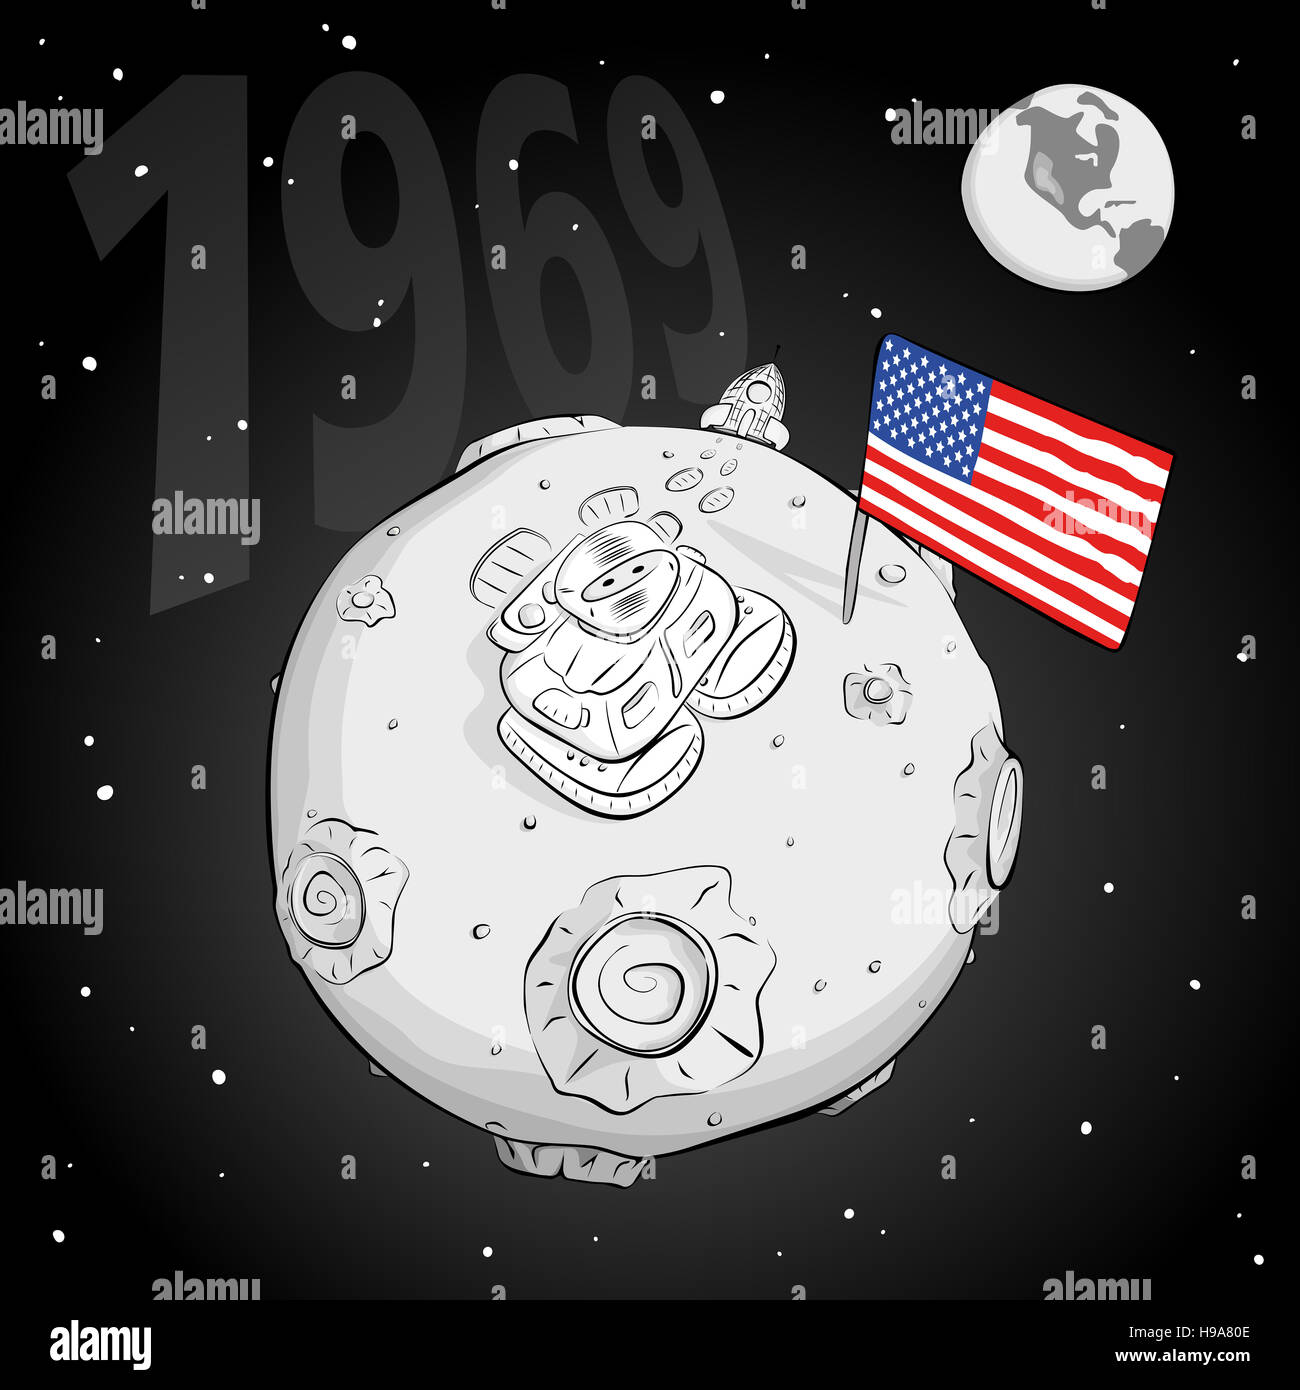 el-astronauta-con-la-bandera-de-estados-unidos-en-la-luna-bw-fotograf-a